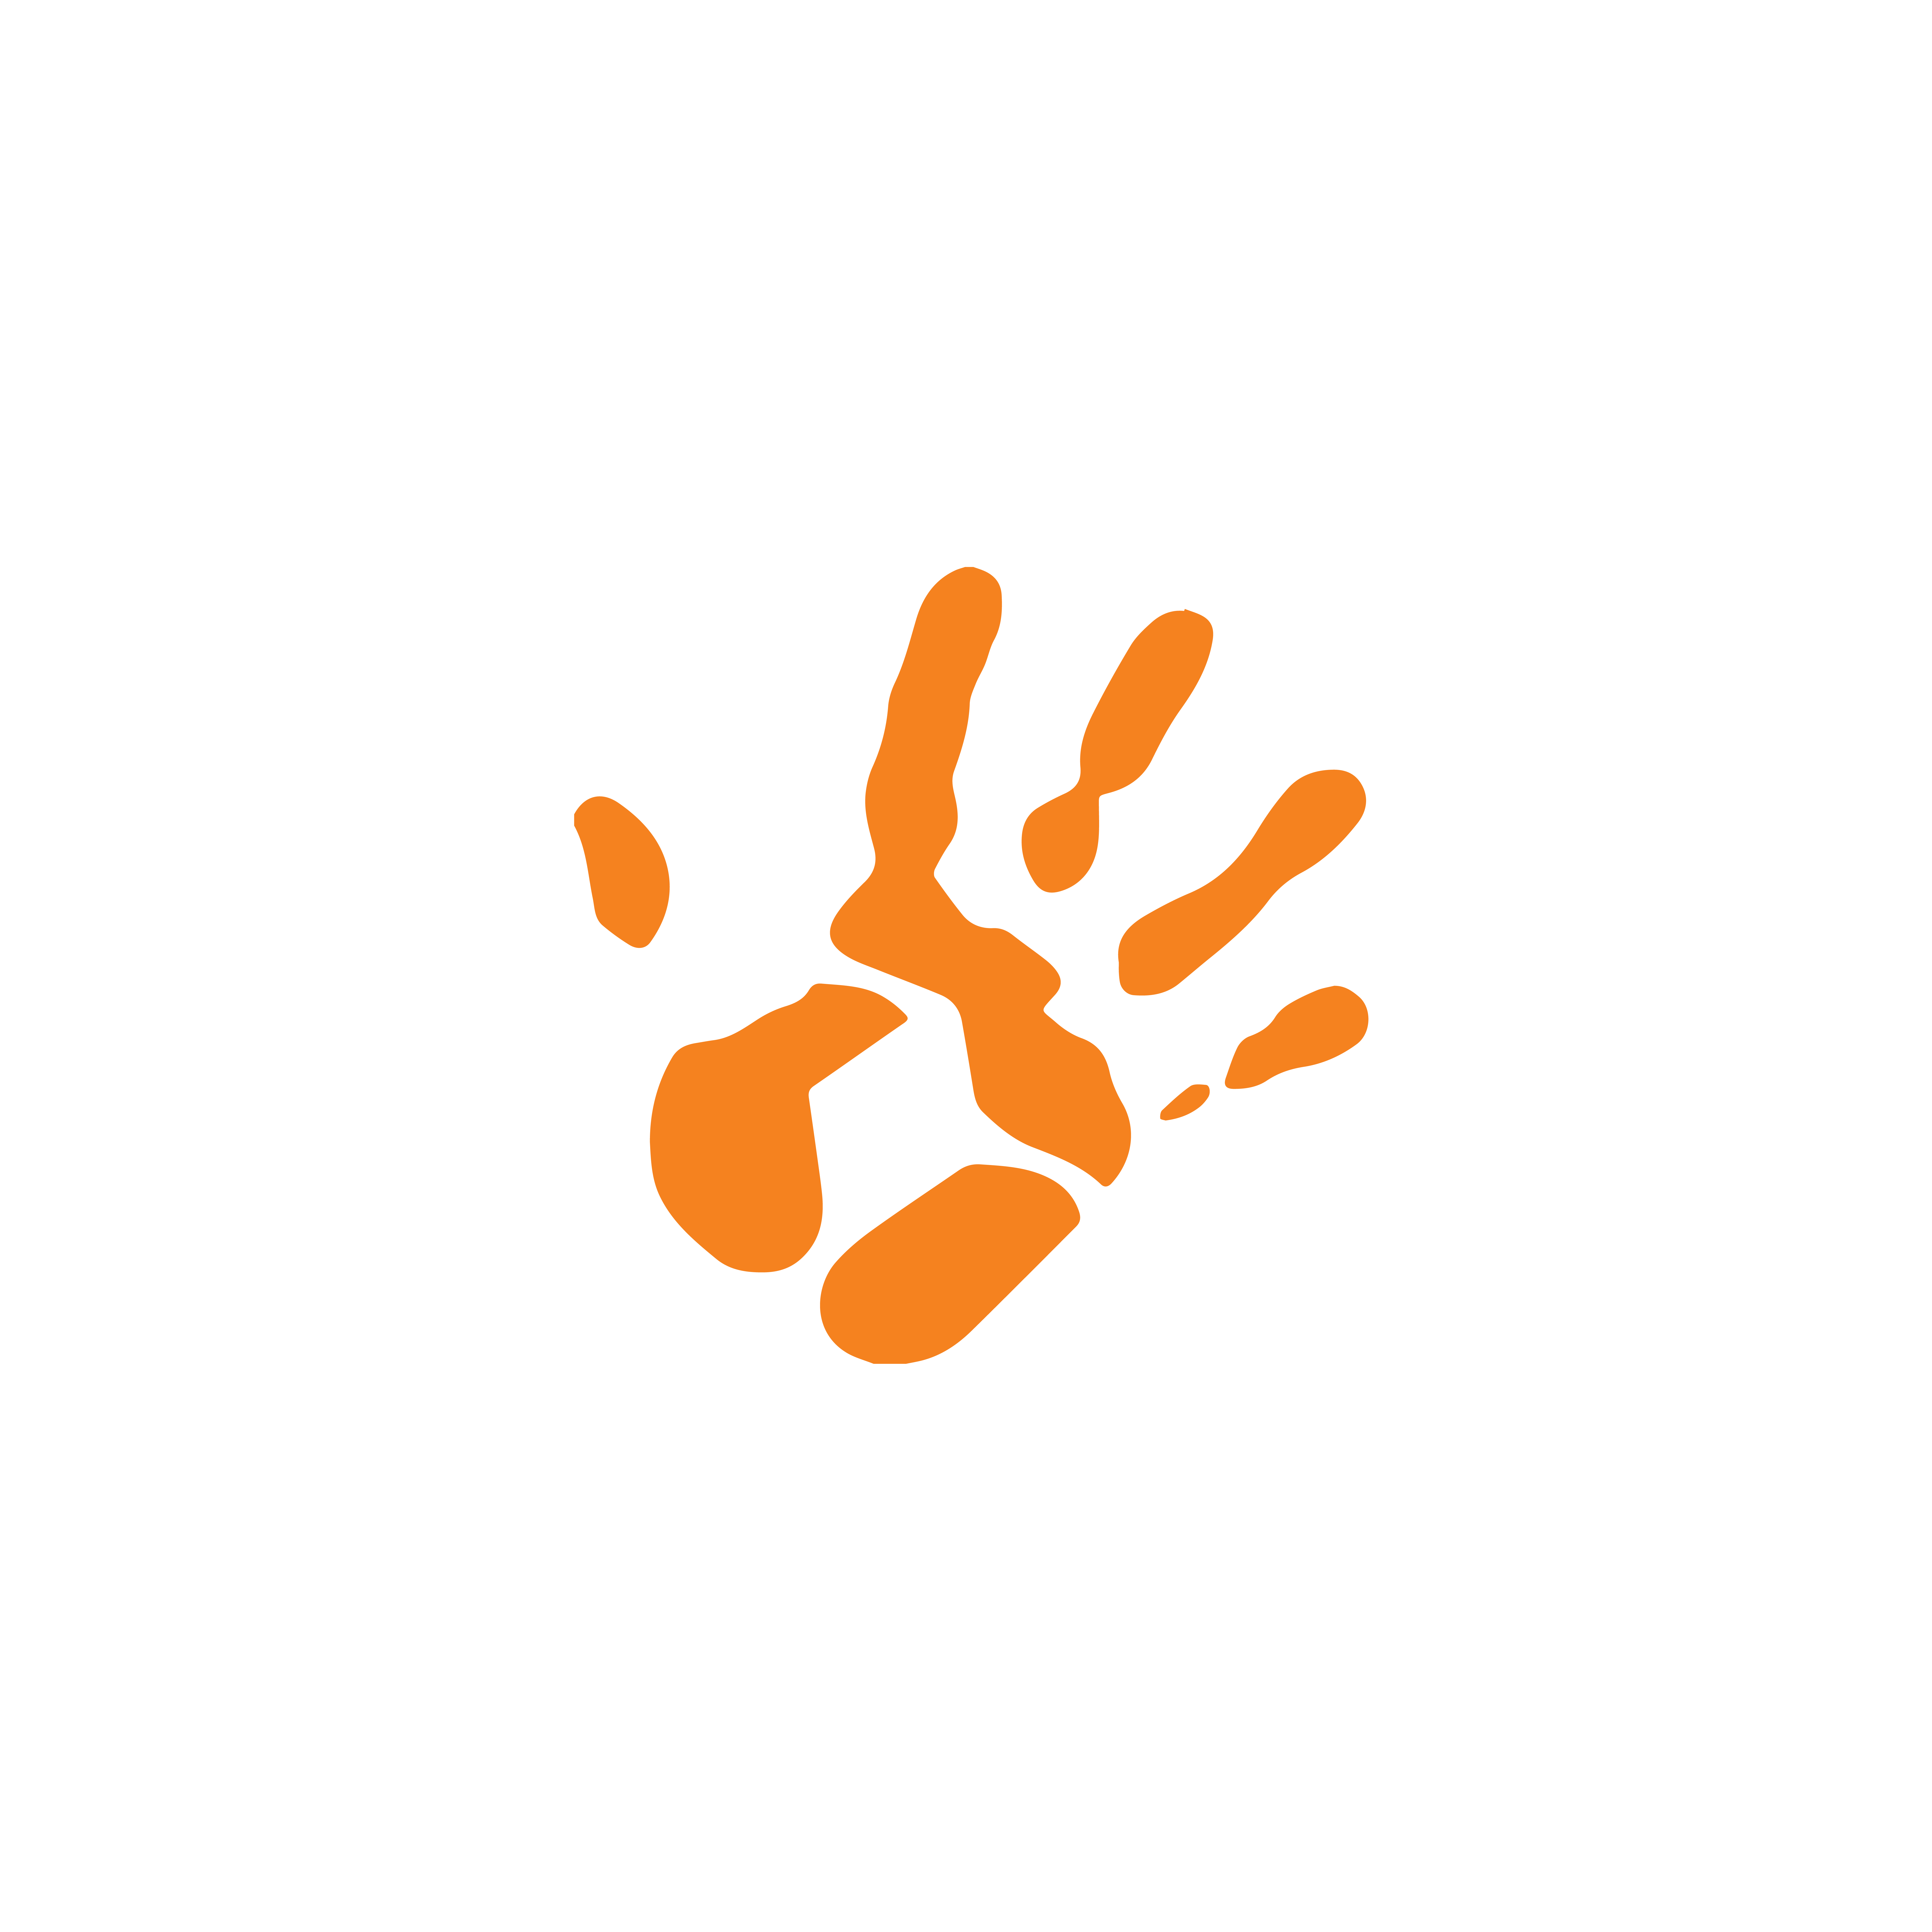 Limpopo Streek_Blou_web-01